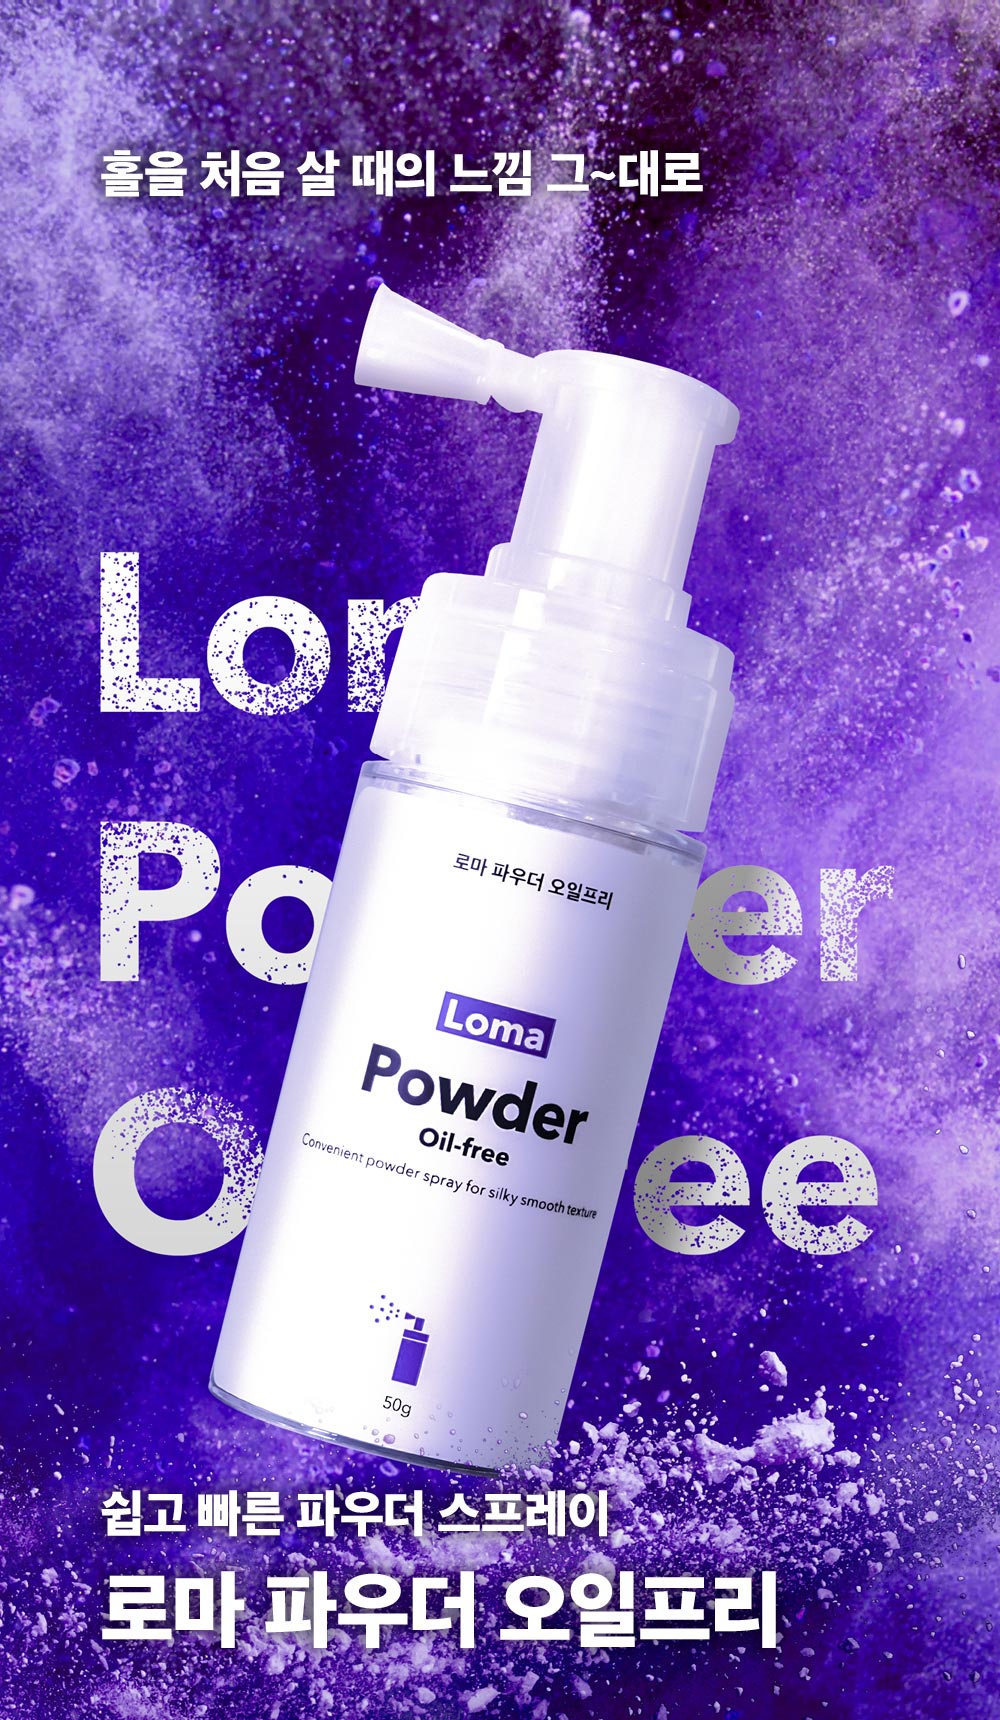 로마 파우더 오일프리 Loma Powder Oil-free